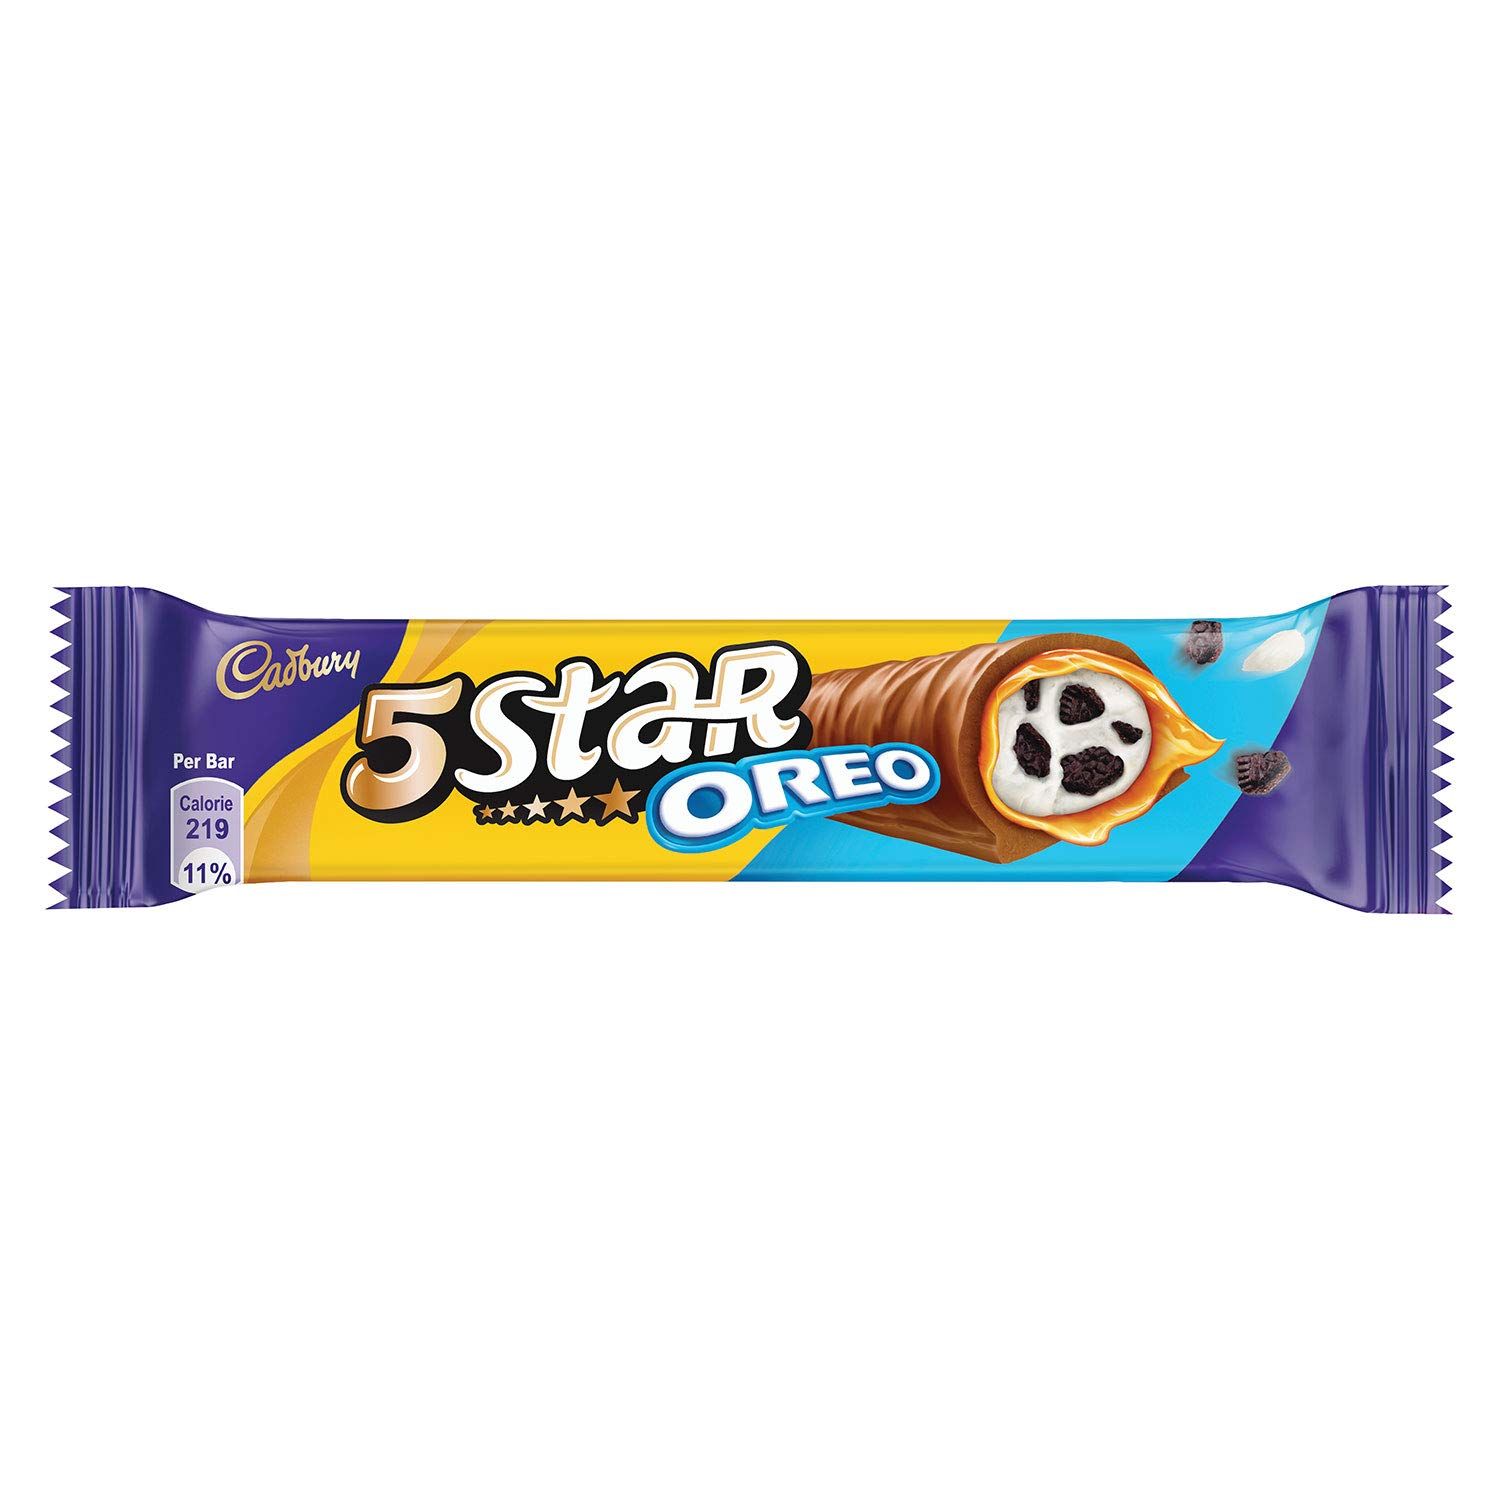 Cadbury 5 Star Oreo Chocolate Bar Image